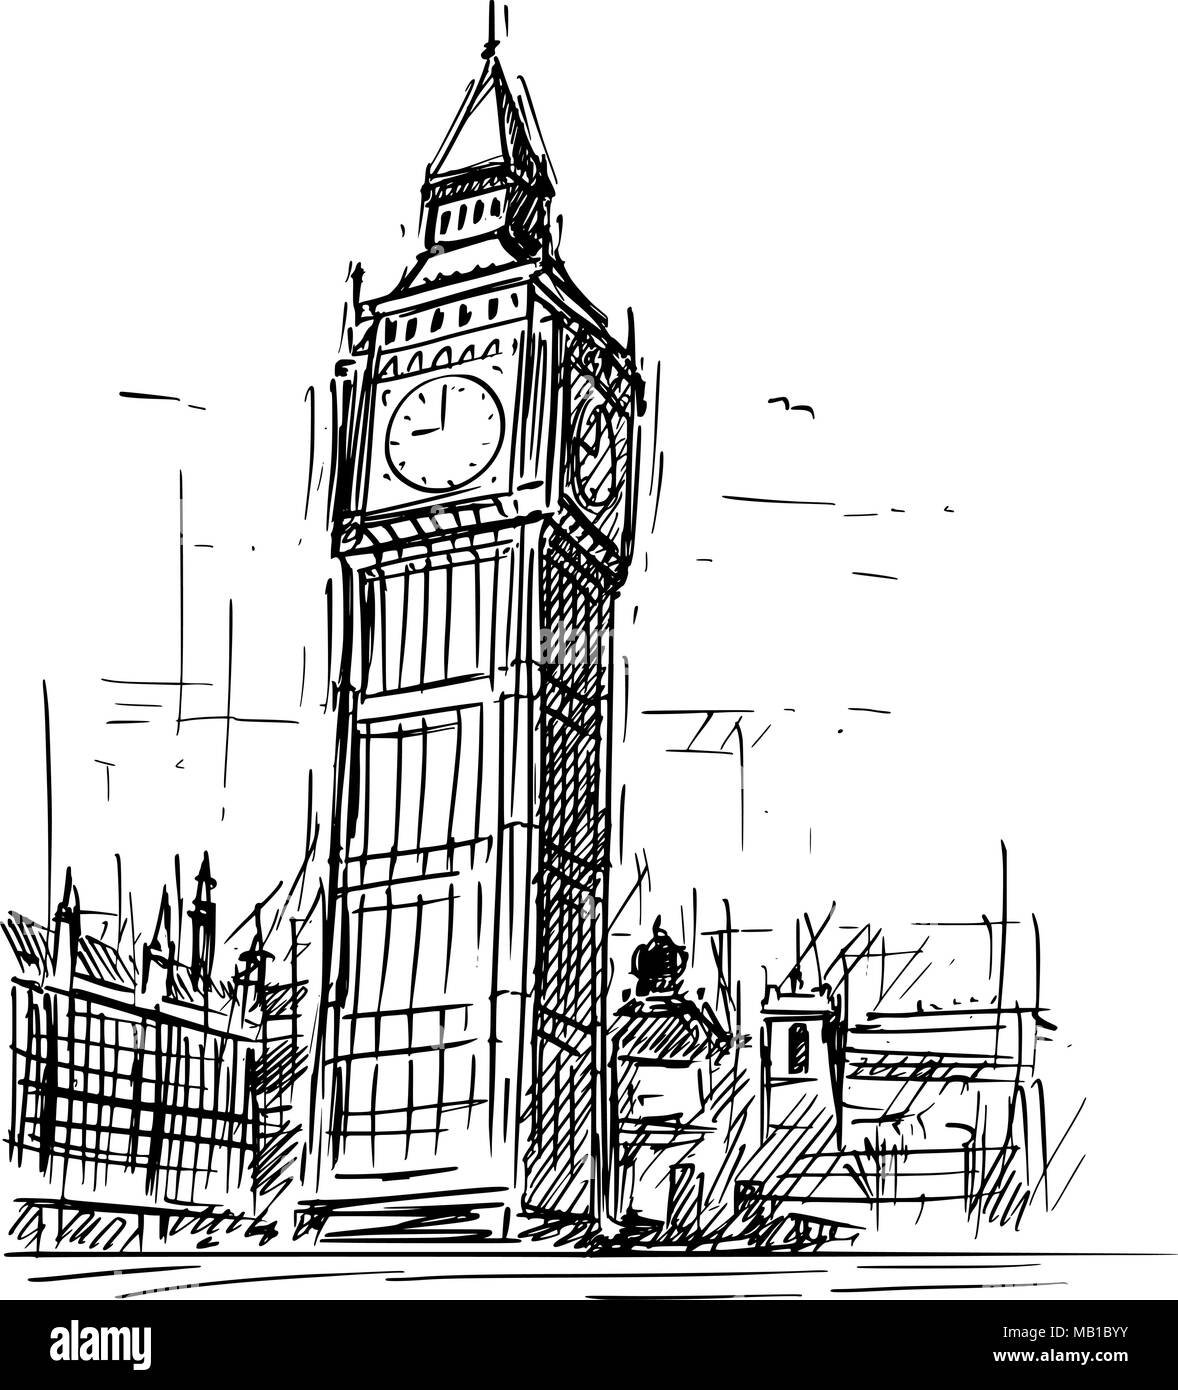 Croquis dessin animé de Big Ben Clock Tower à Londres, Angleterre, Royaume-Uni Illustration de Vecteur